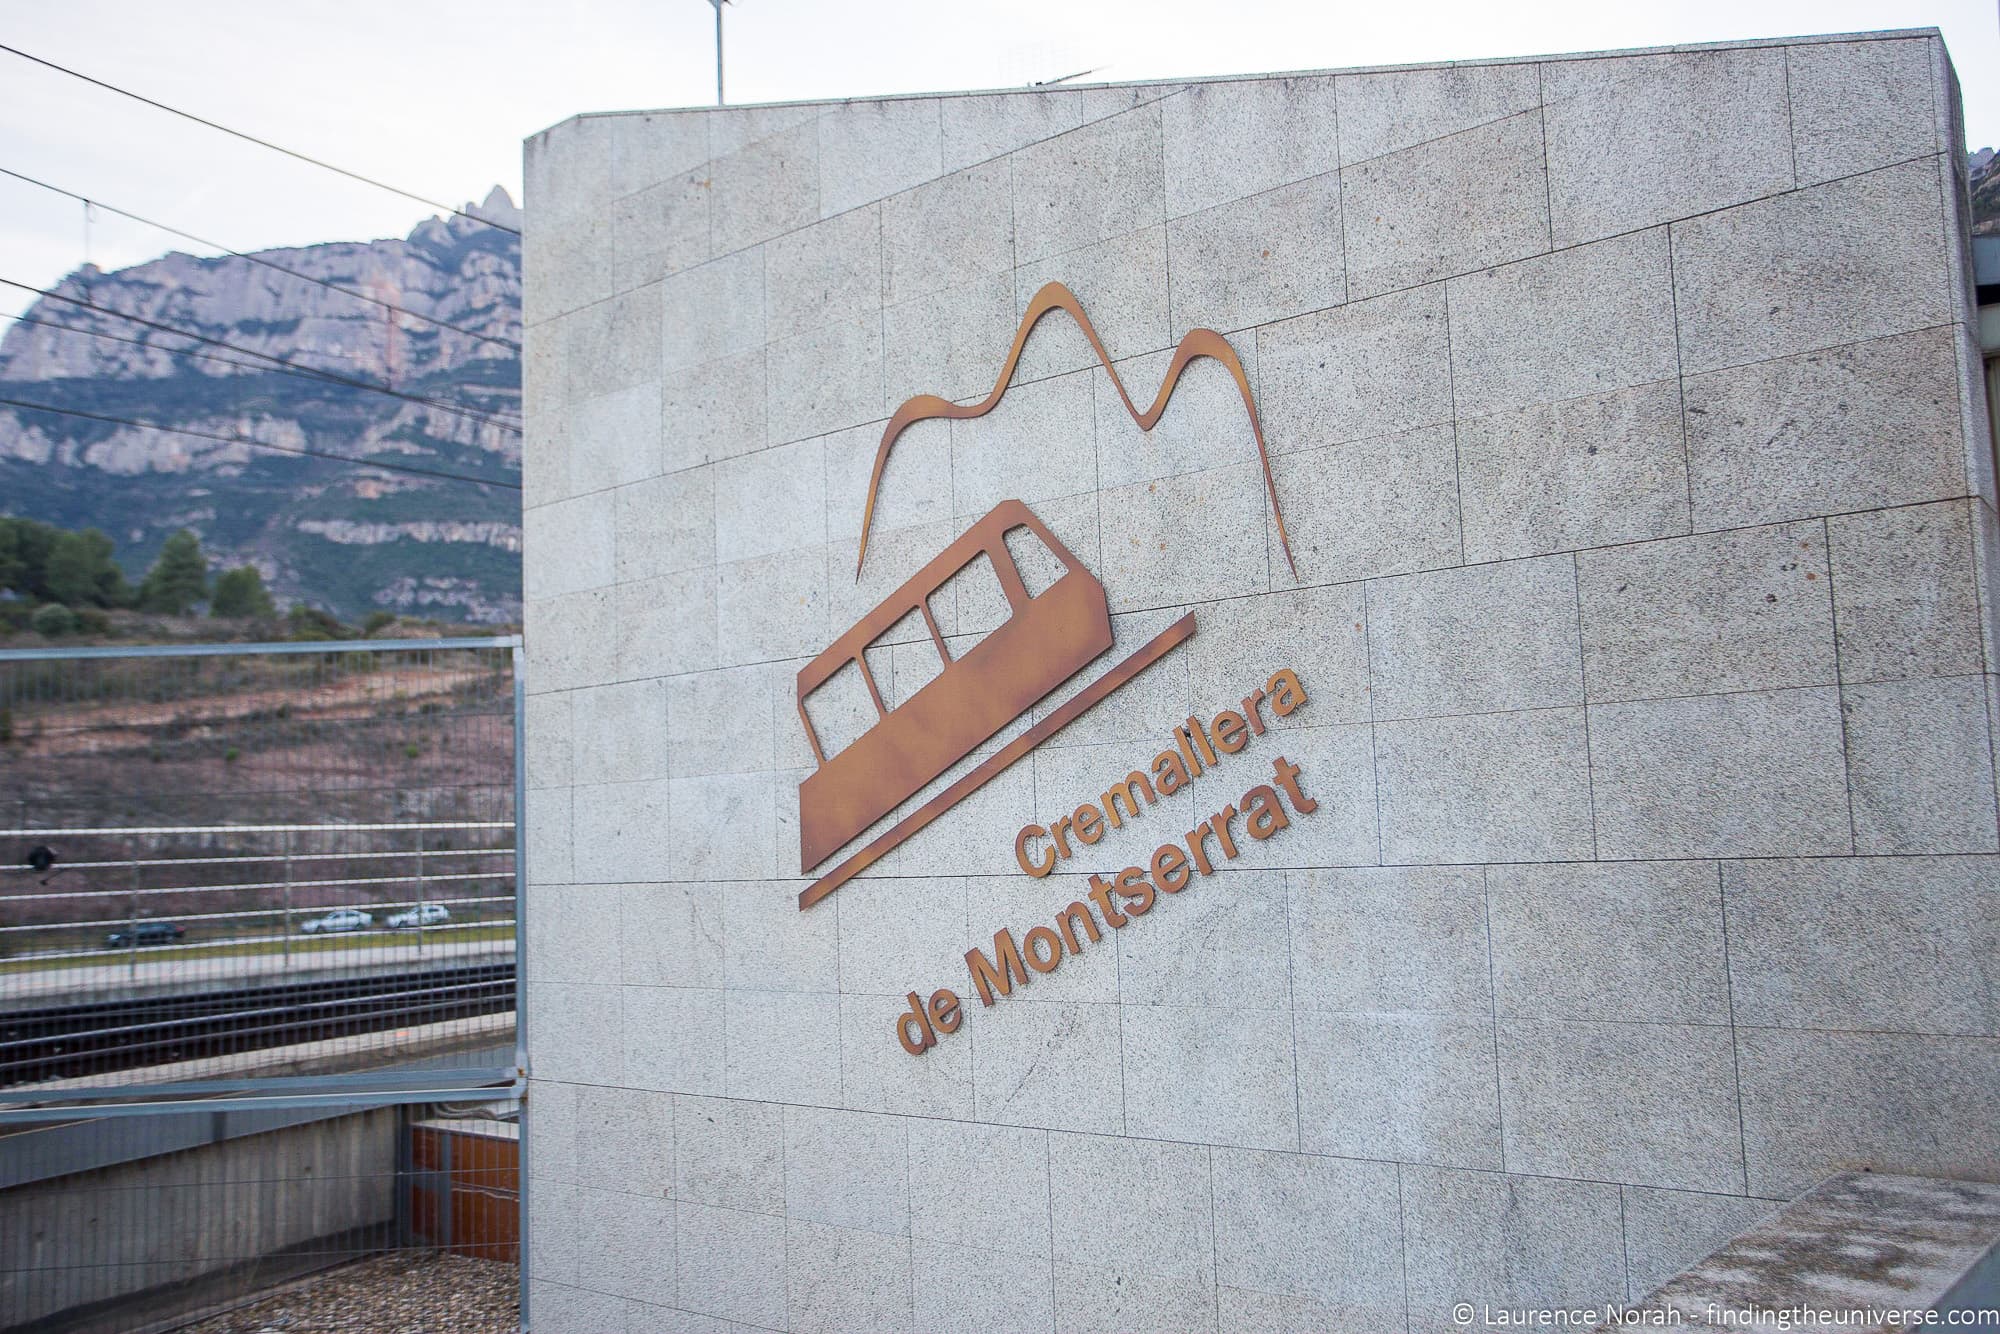 Cremallera de Montserrat